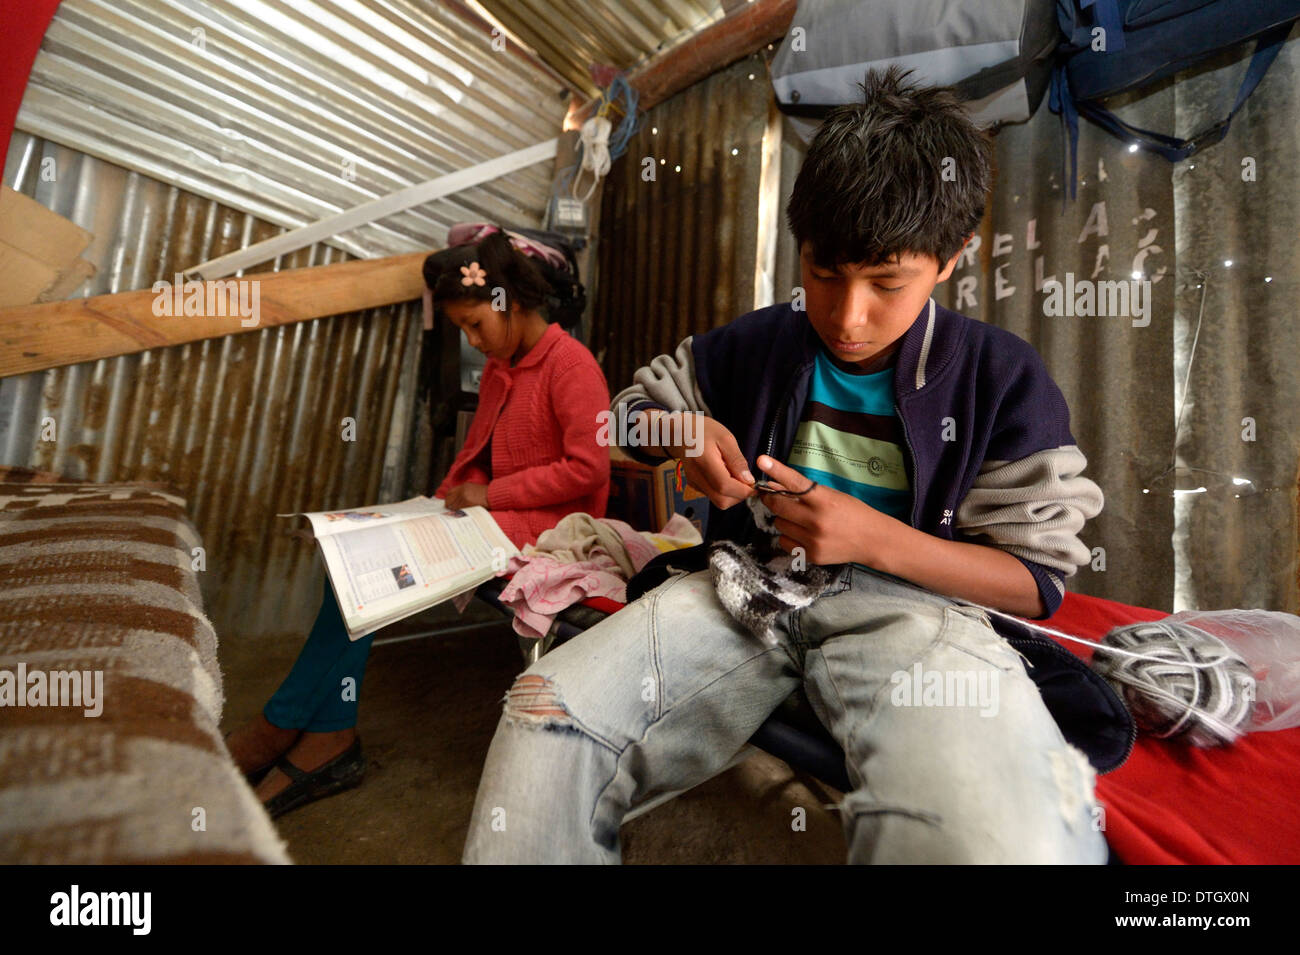 Adolescent, 14 ans, le tricot d'une écharpe, sa sœur, 12 ans, fait ses devoirs, dans une simple cabane en tôle ondulée Banque D'Images